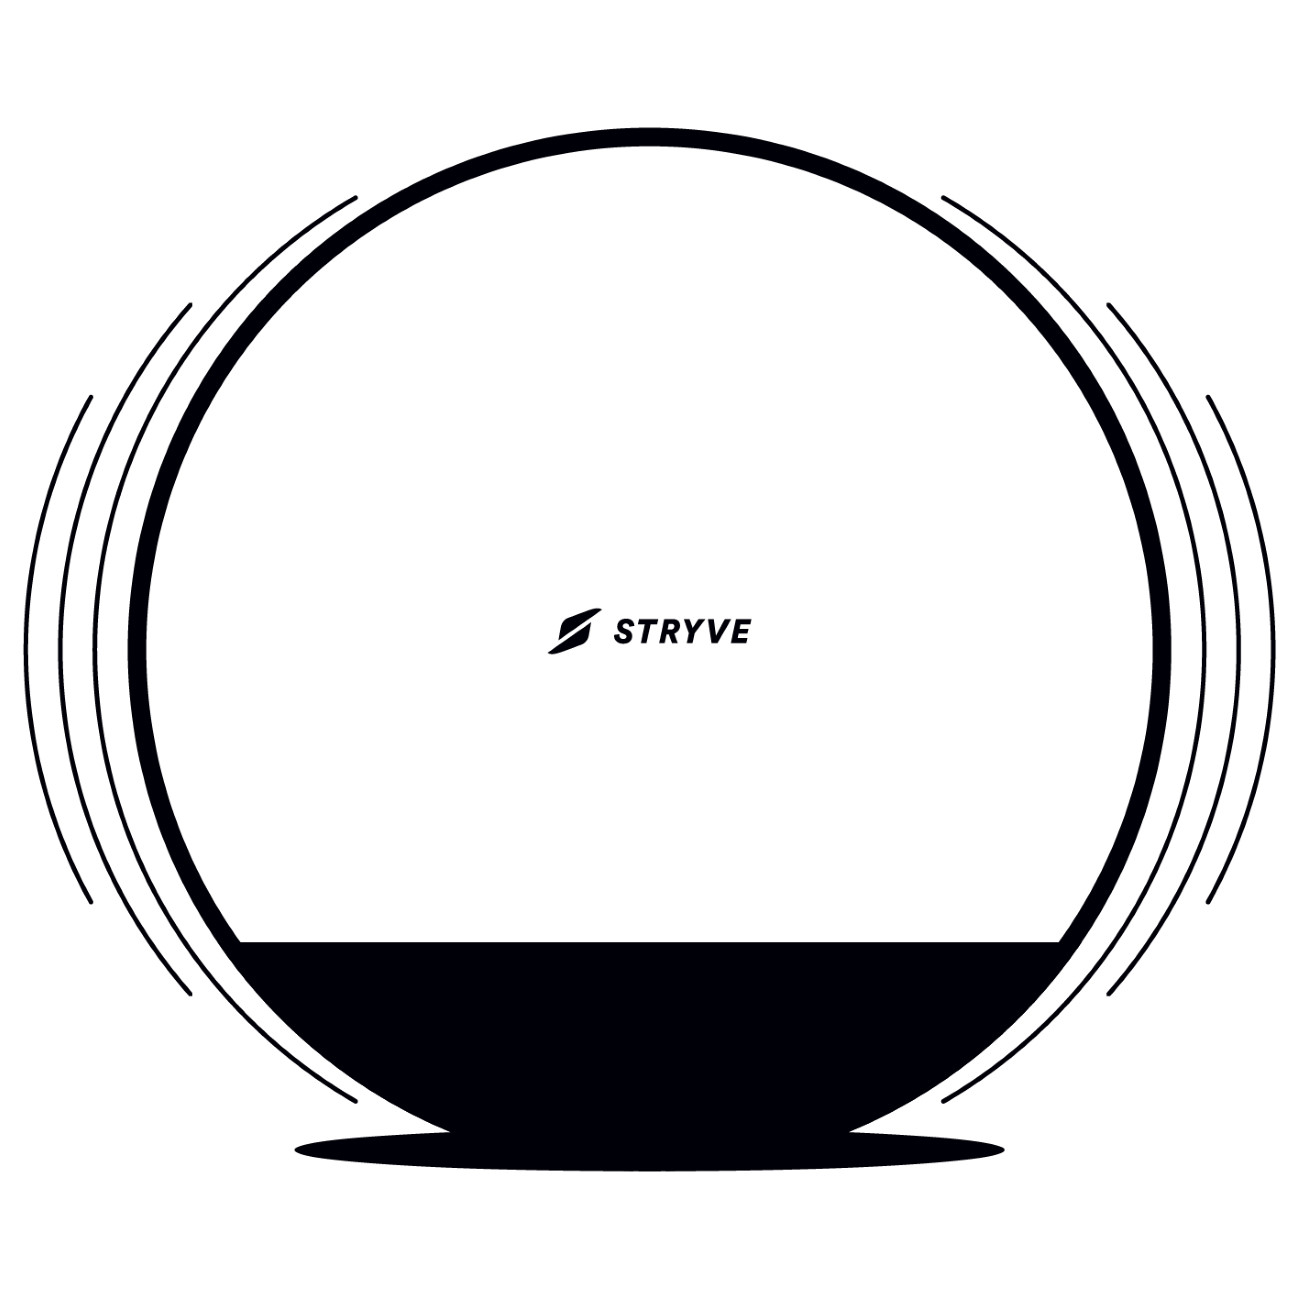 Stryve Active Ball - Gymnastikball mit Funktion und Designauszeichnung